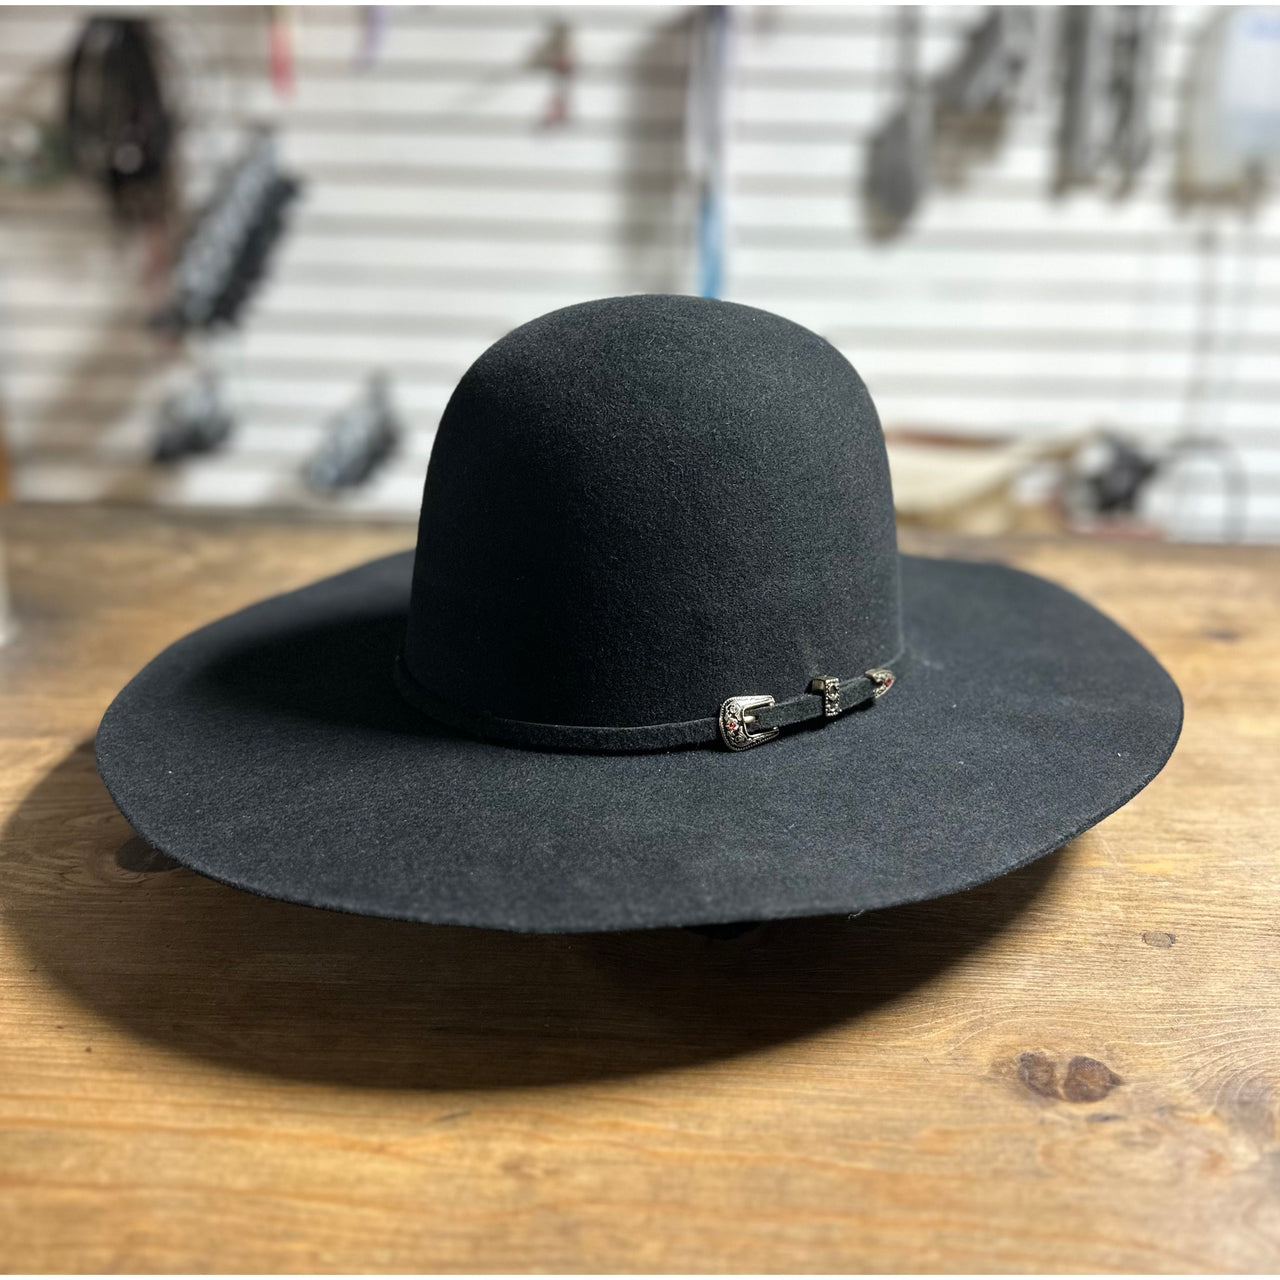 Prohat  Wool Felt Open Crown Western Hat - Charcoal